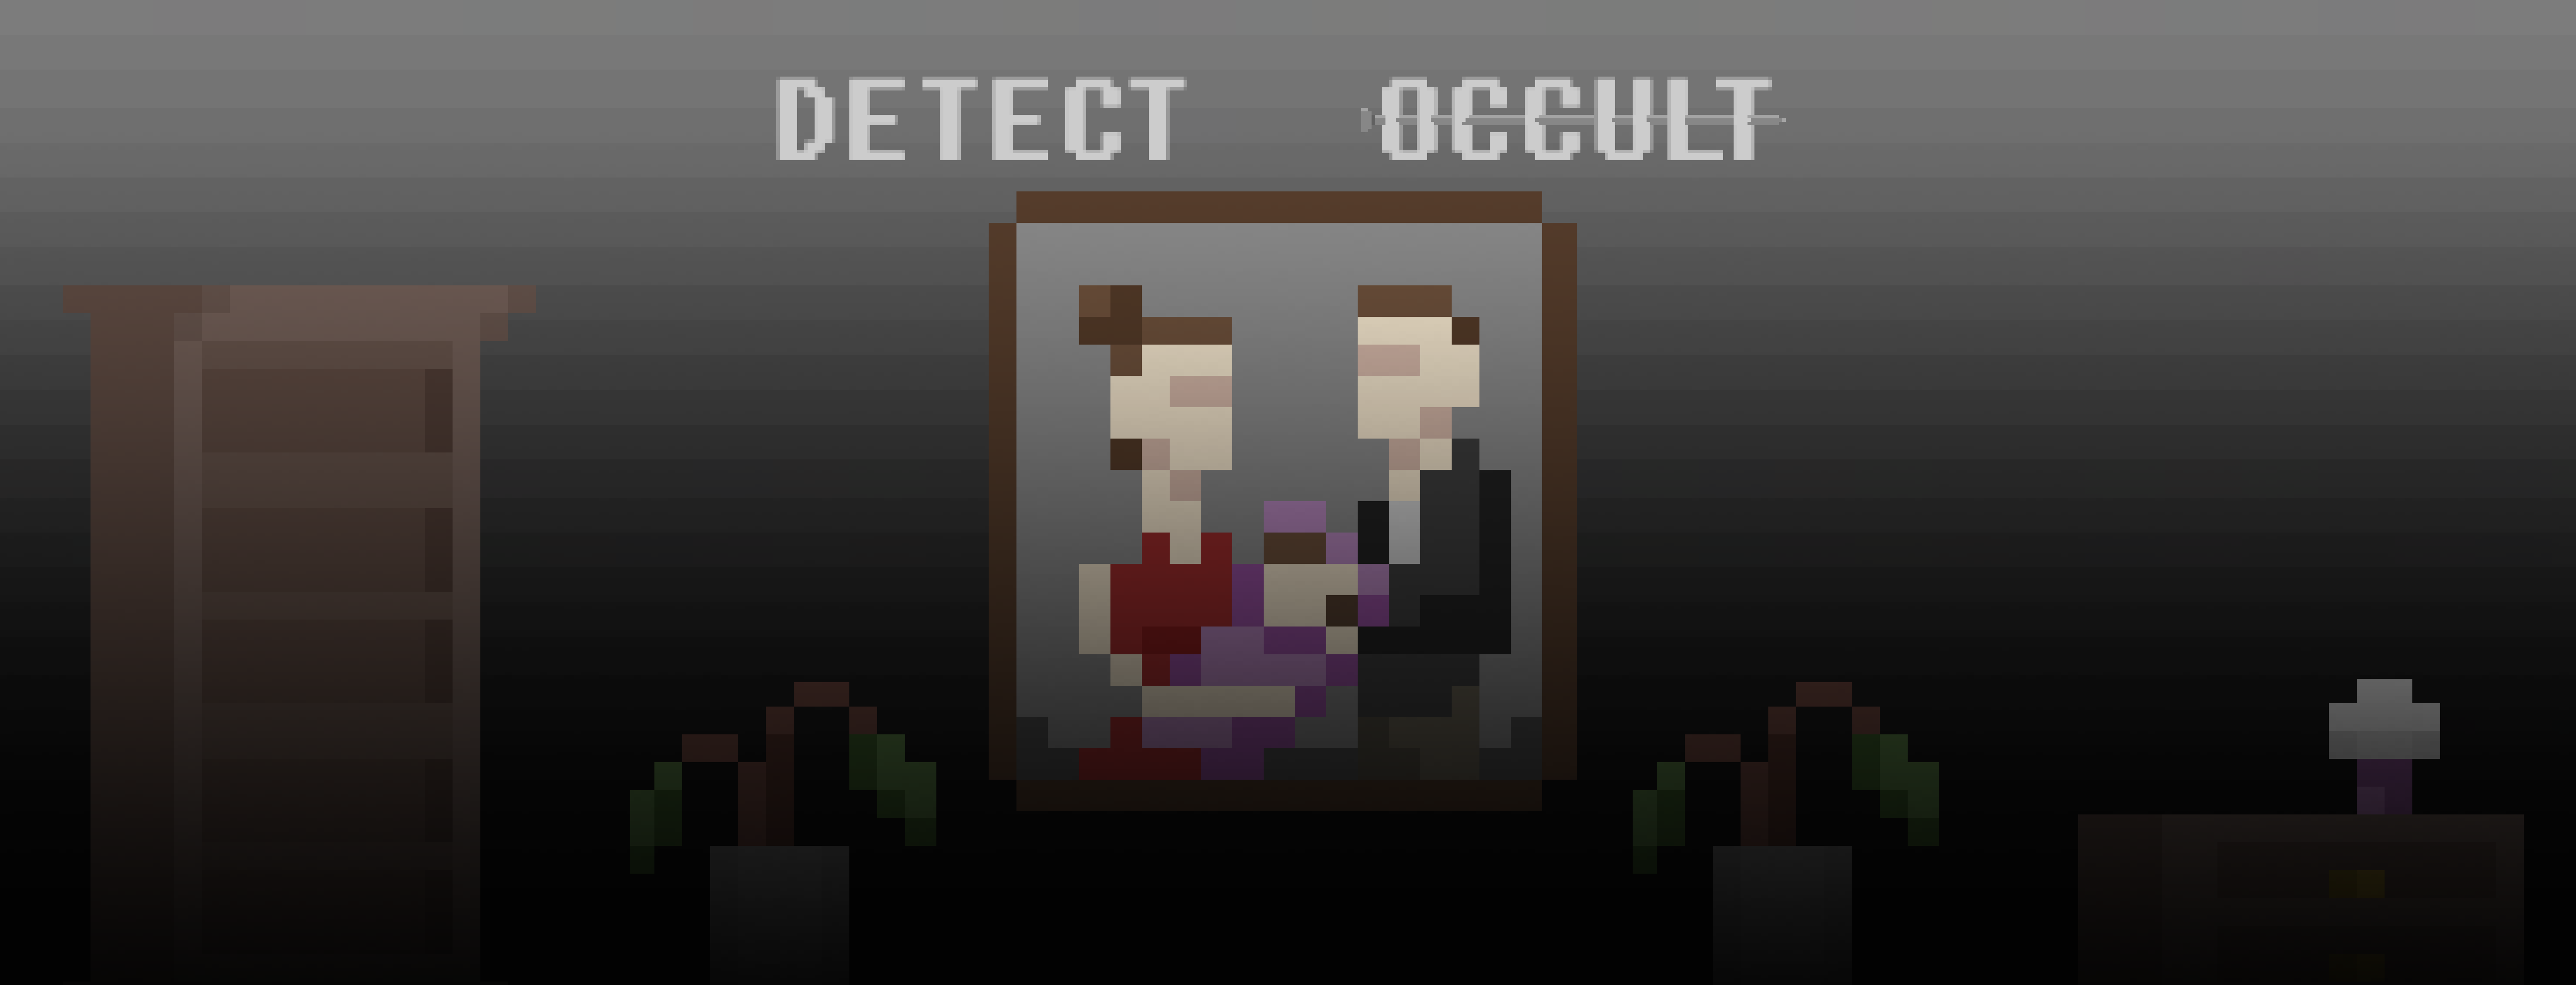 Detect Occult